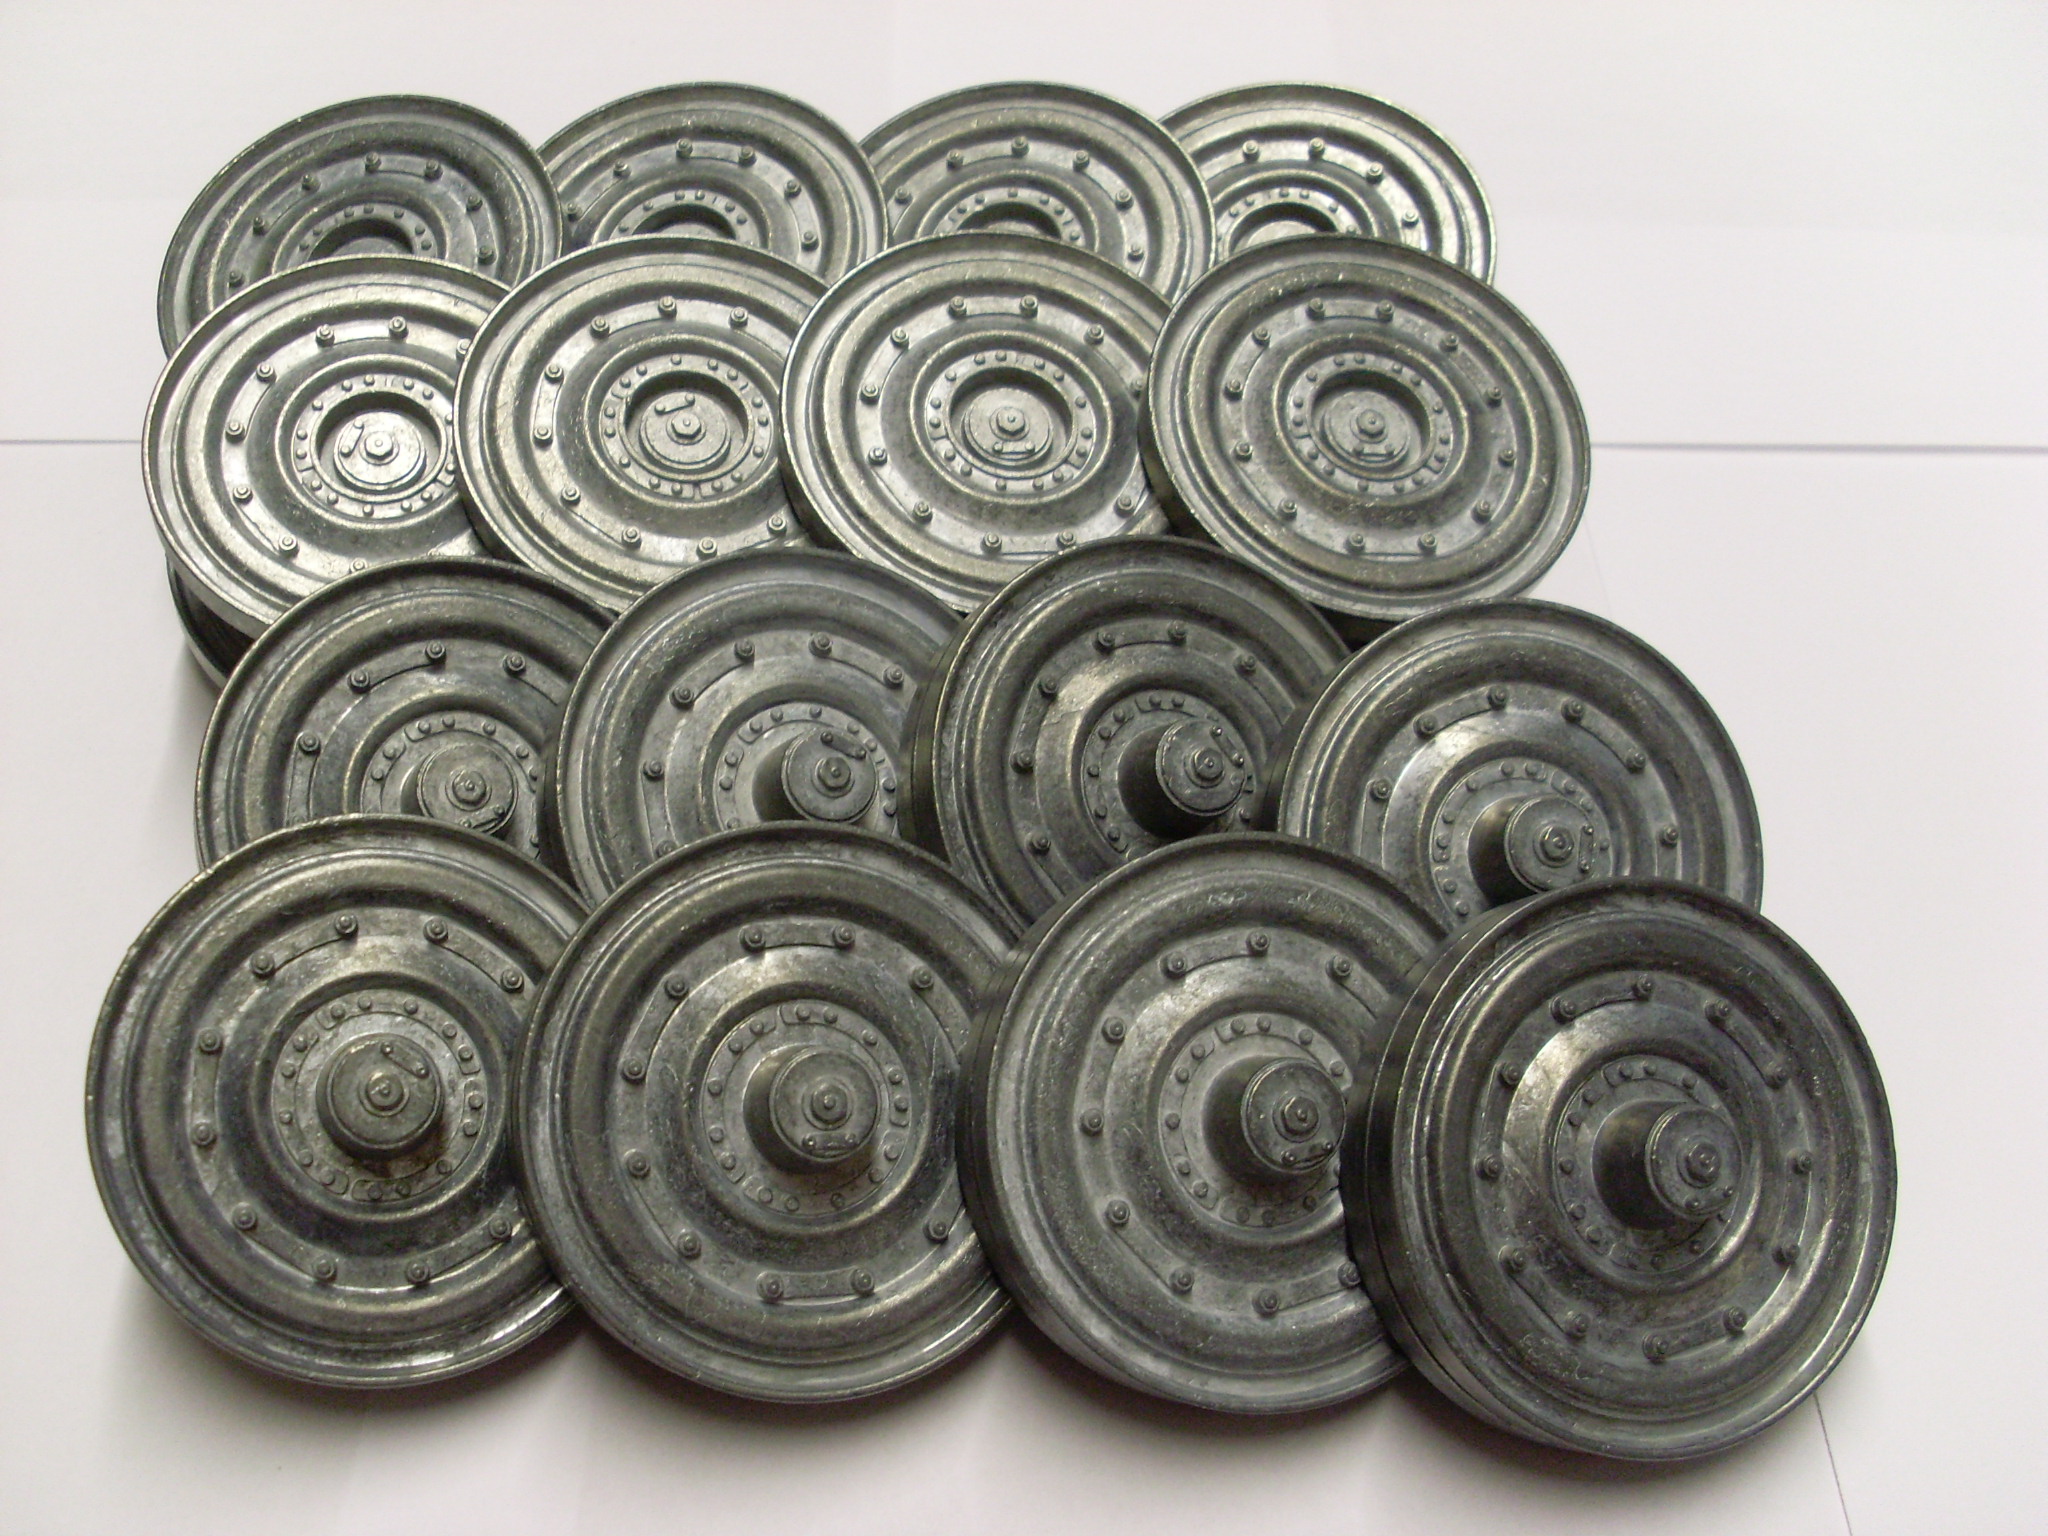 Taigen late pattern metal road wheels for Heng Long/Taigen Tiger 1 1/16 scale